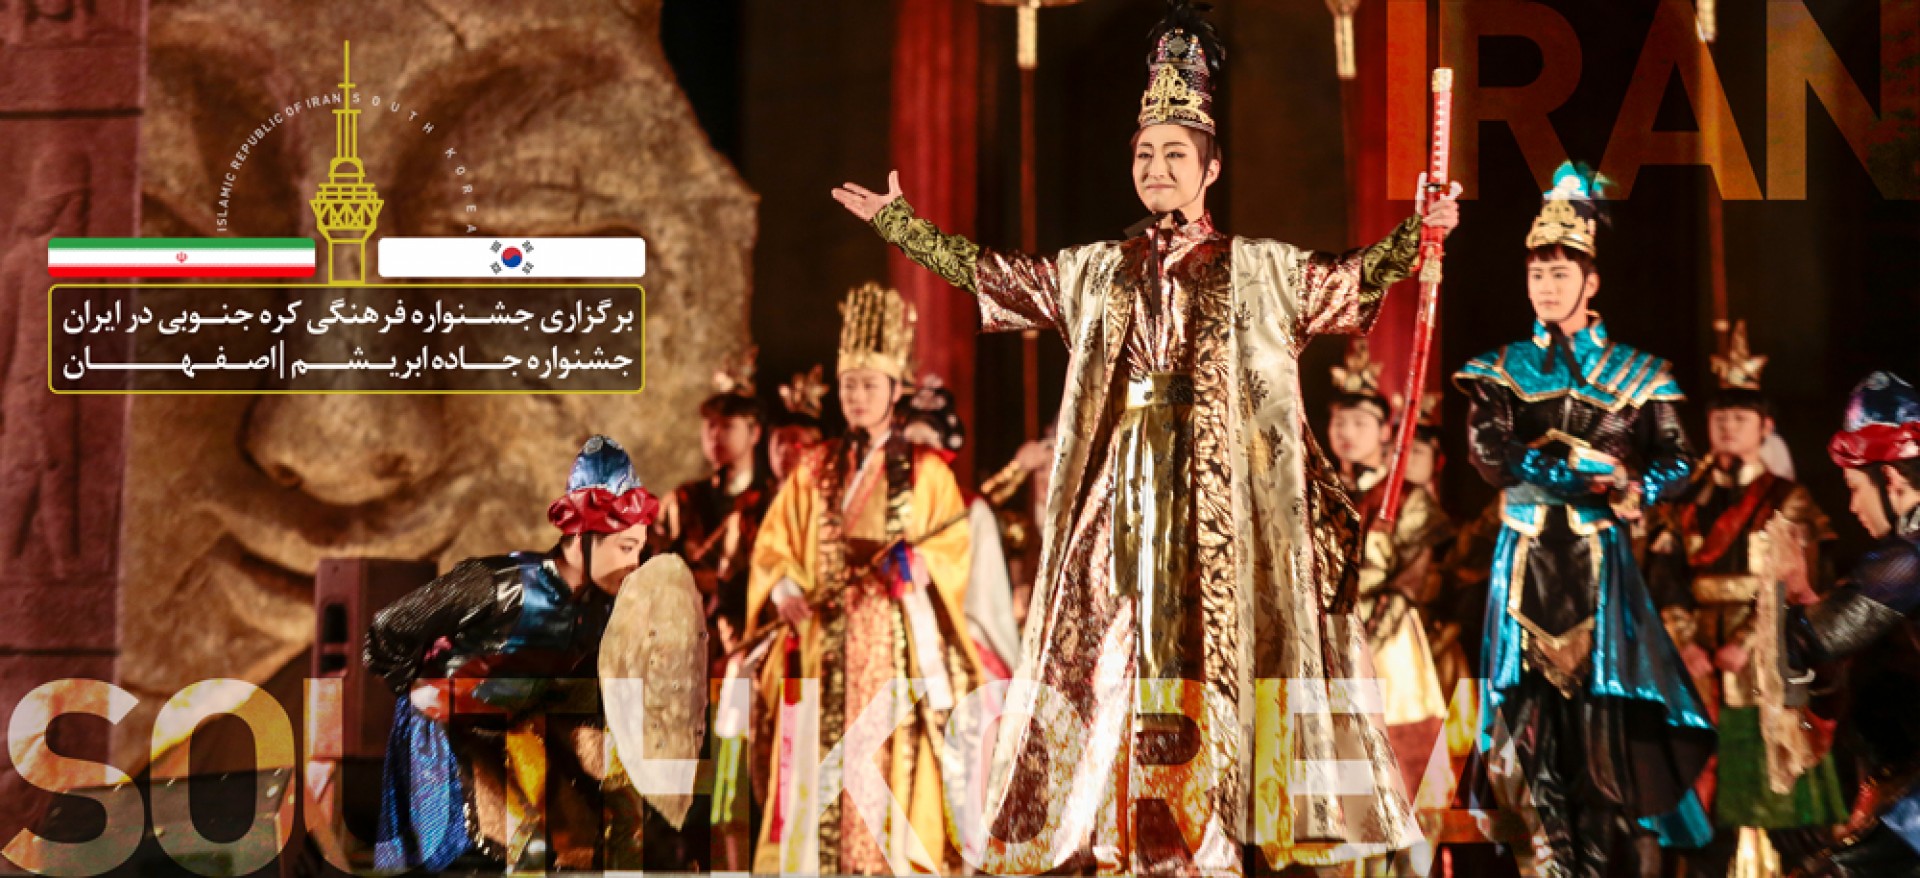 برگزاری جشنواره فرهنگی کره جنوبی در اصفهان